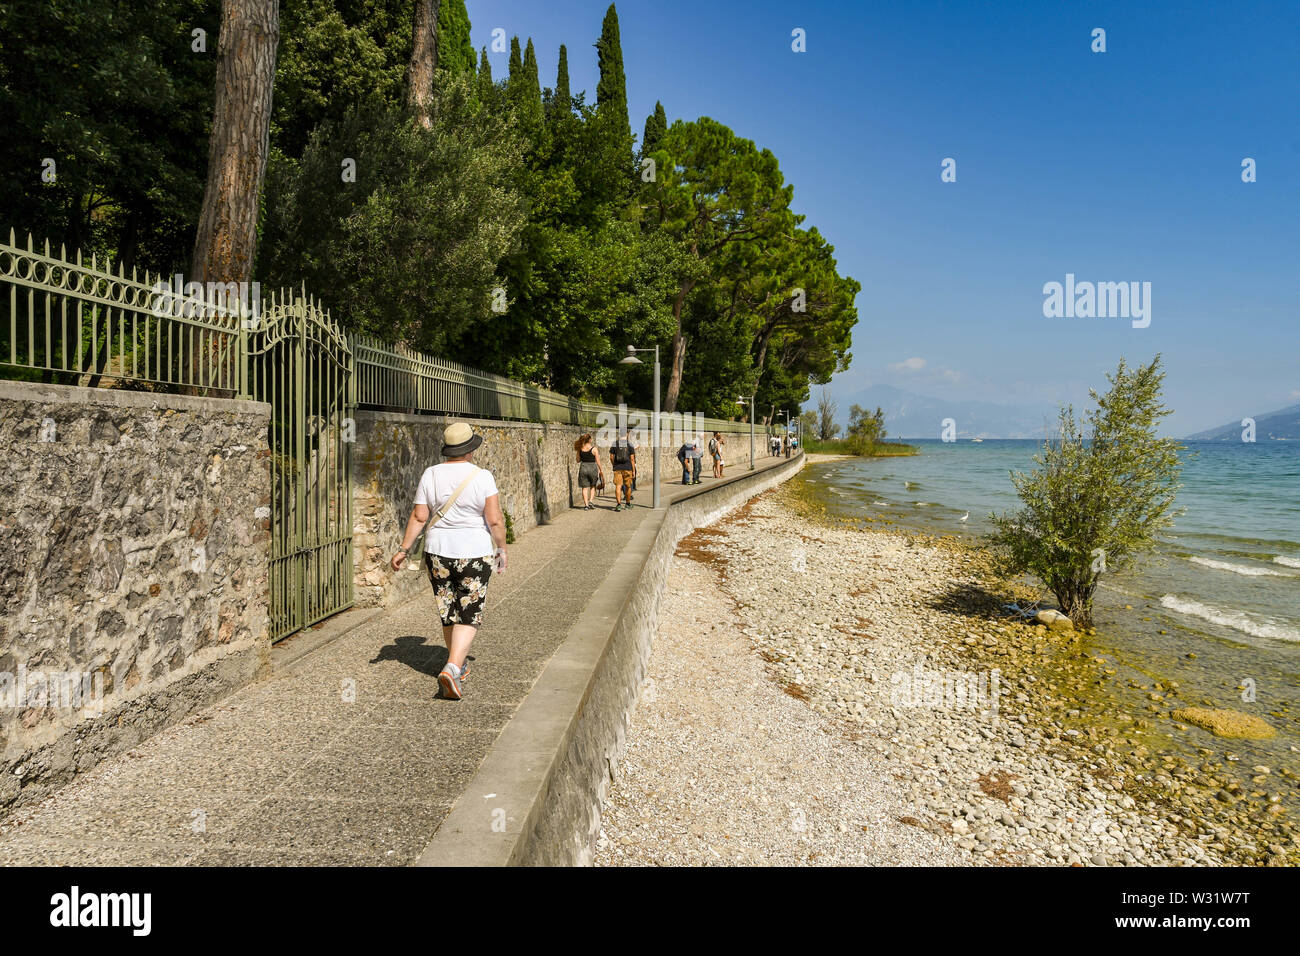 SIRMIONE SUL LAGO DI GARDA, Italia - Settembre 2018: persona che cammina su un percorso attorno al bordo del comune di Sirmione sul Lago di Garda. Foto Stock